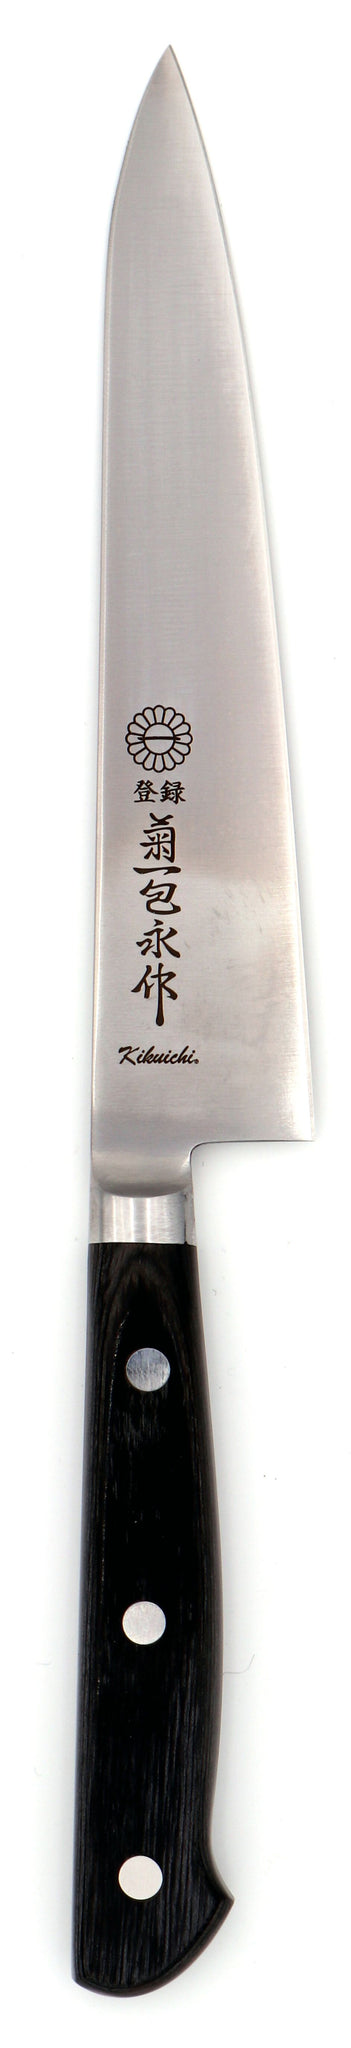 Kikuichi Semi-Stainless 150mm Petty